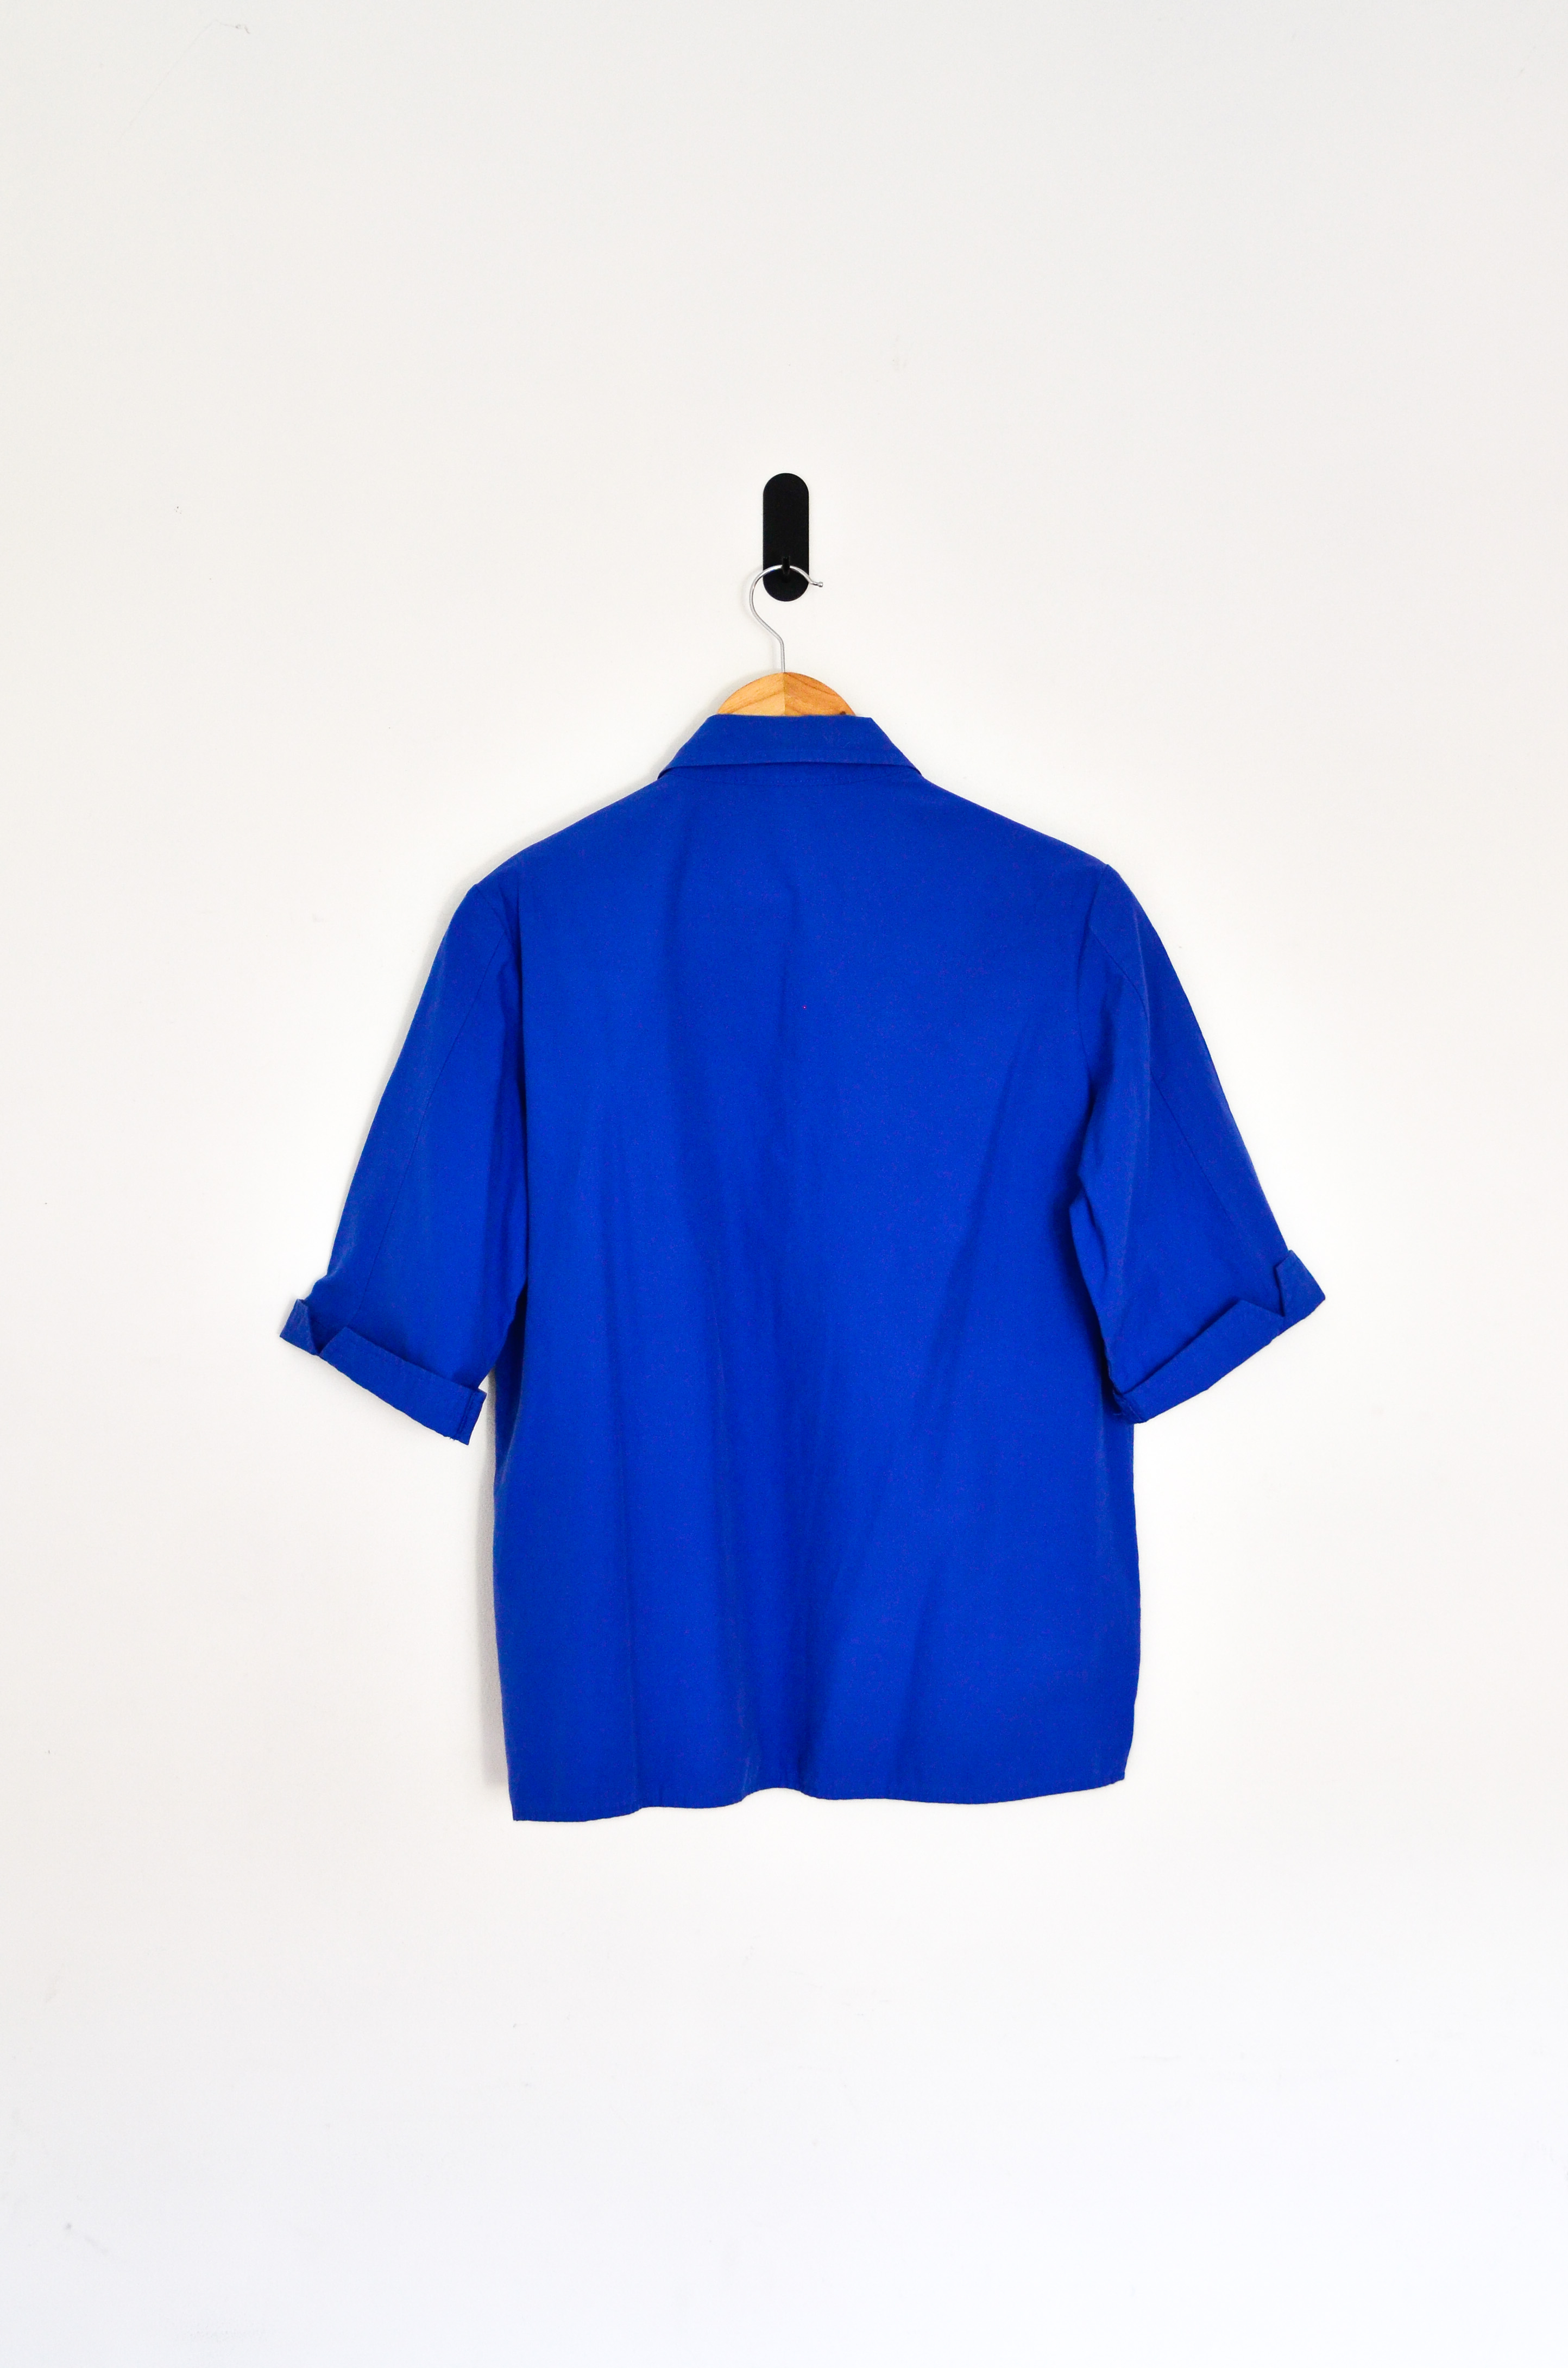 Camisa azul klein vntg